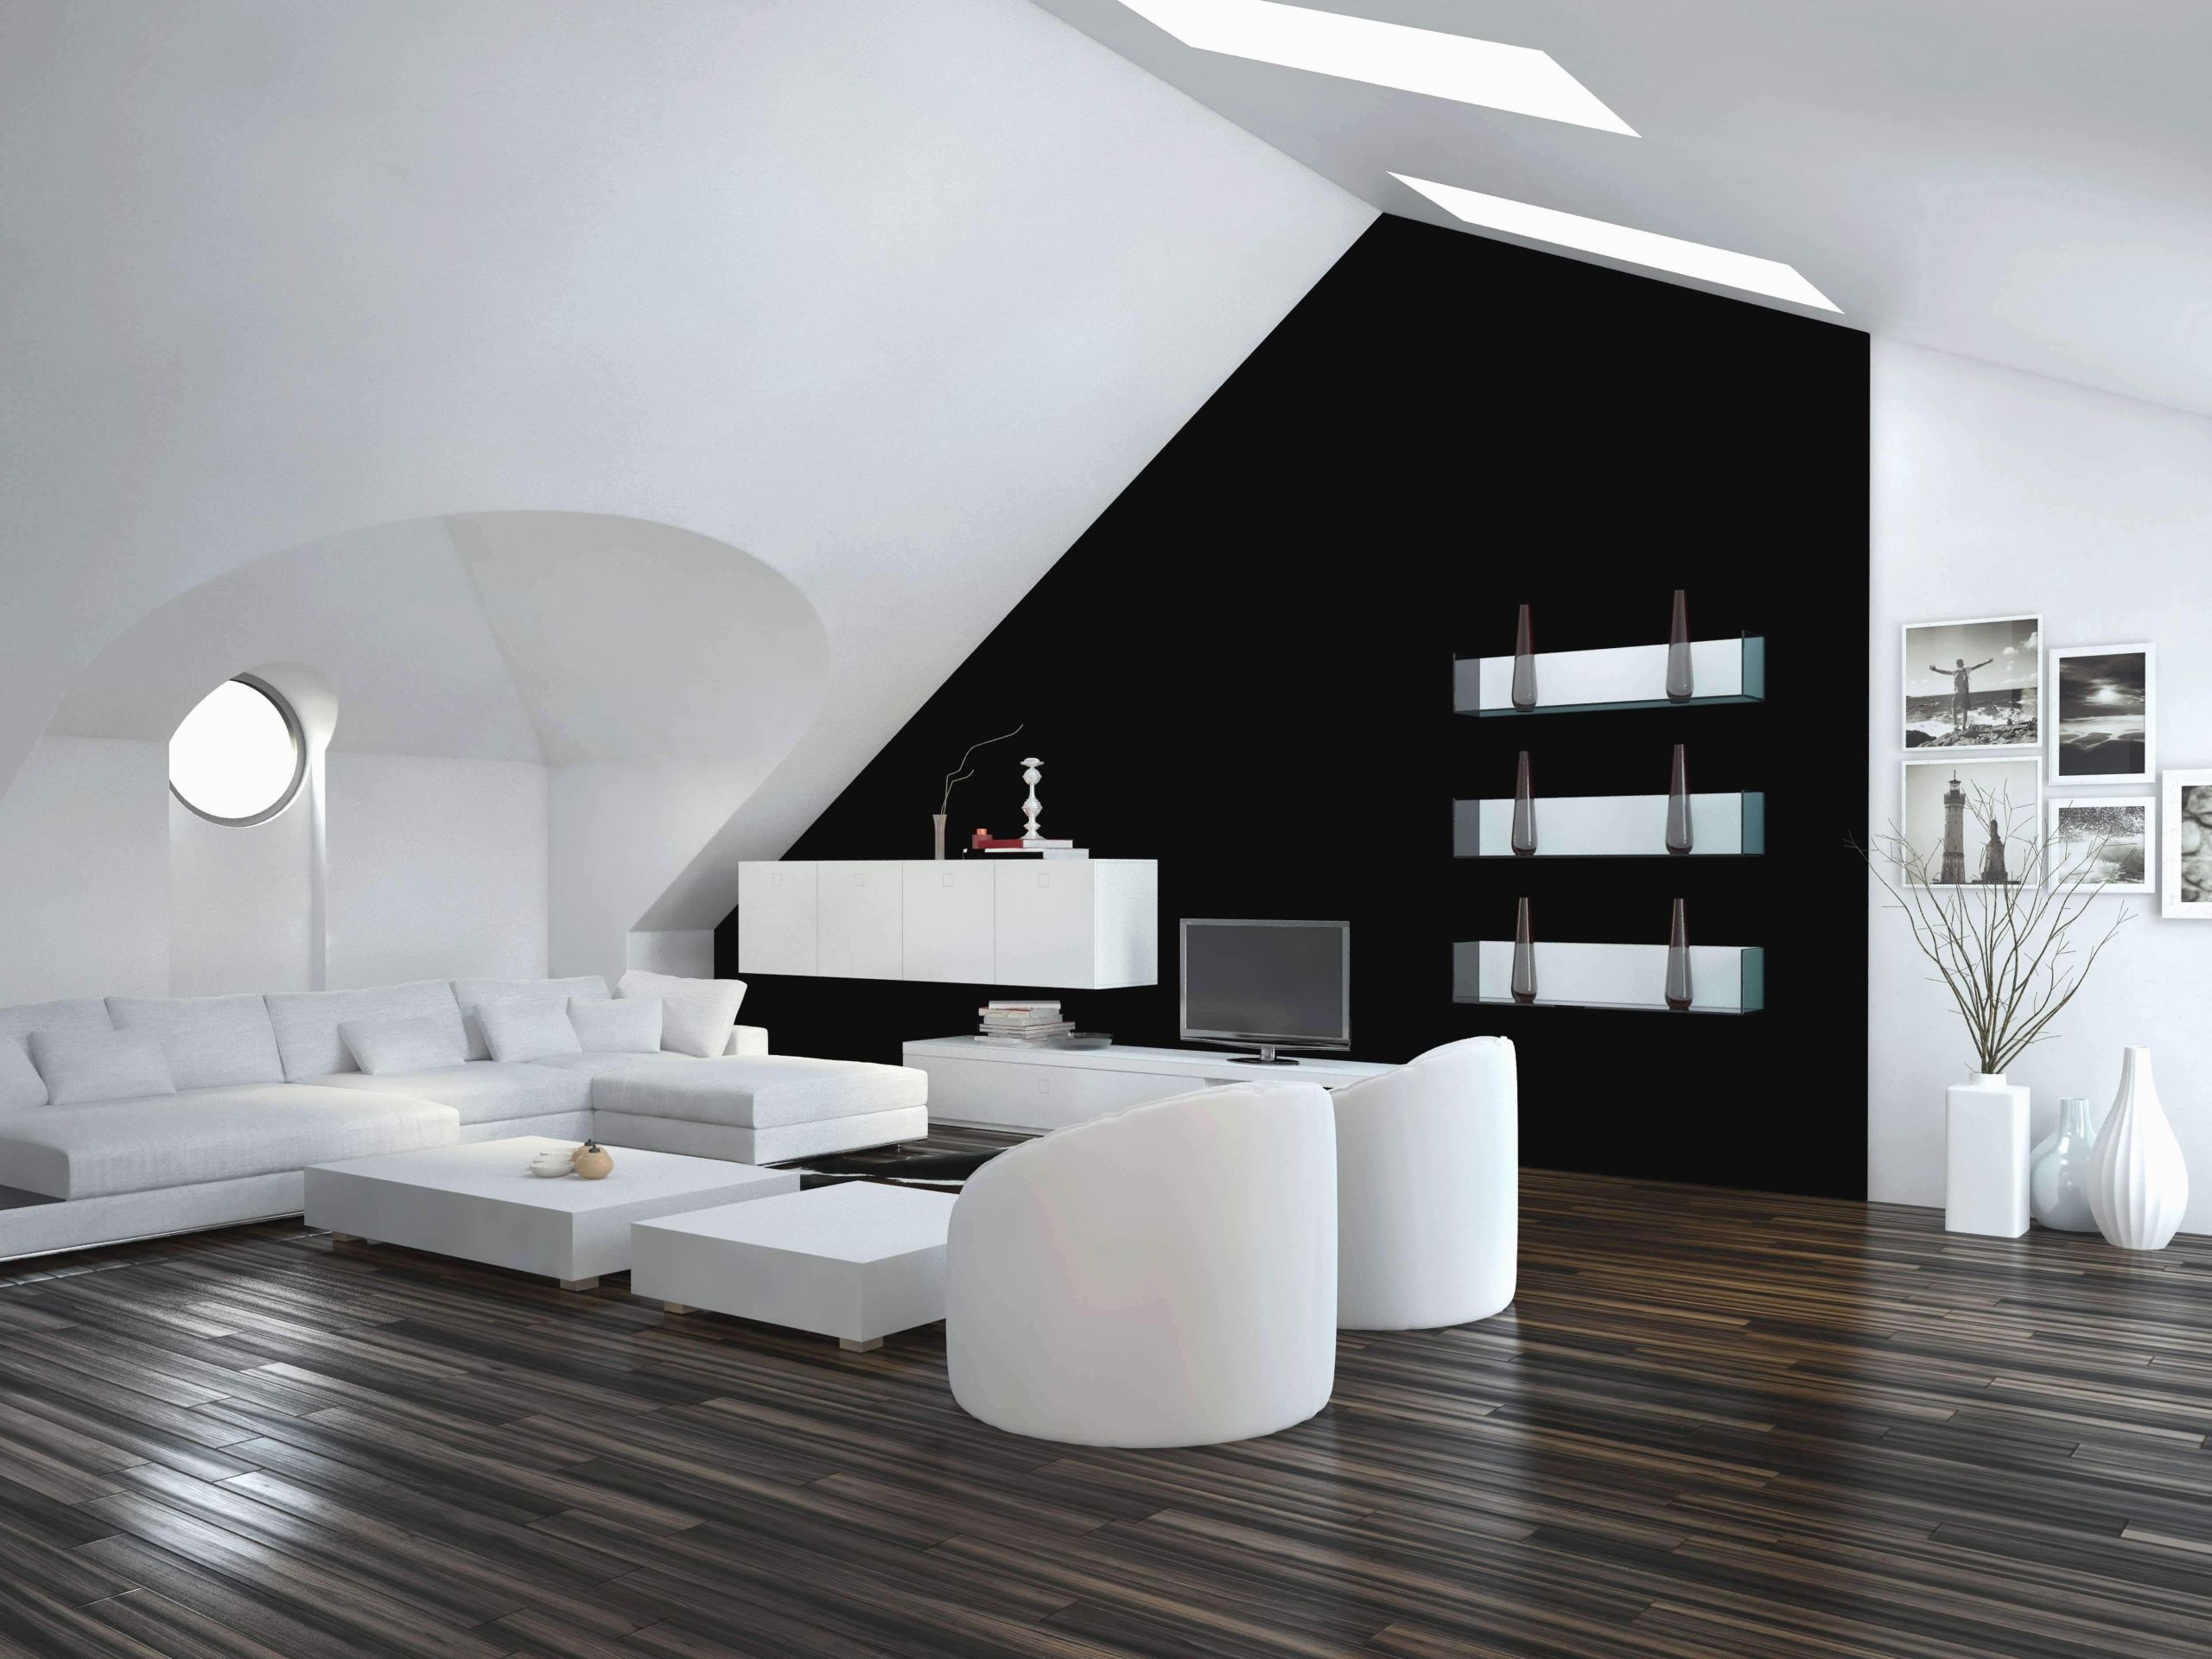 Edelstahl Deko Best Of 34 Luxus Dekoration Wohnzimmer Ideen Das Beste Von